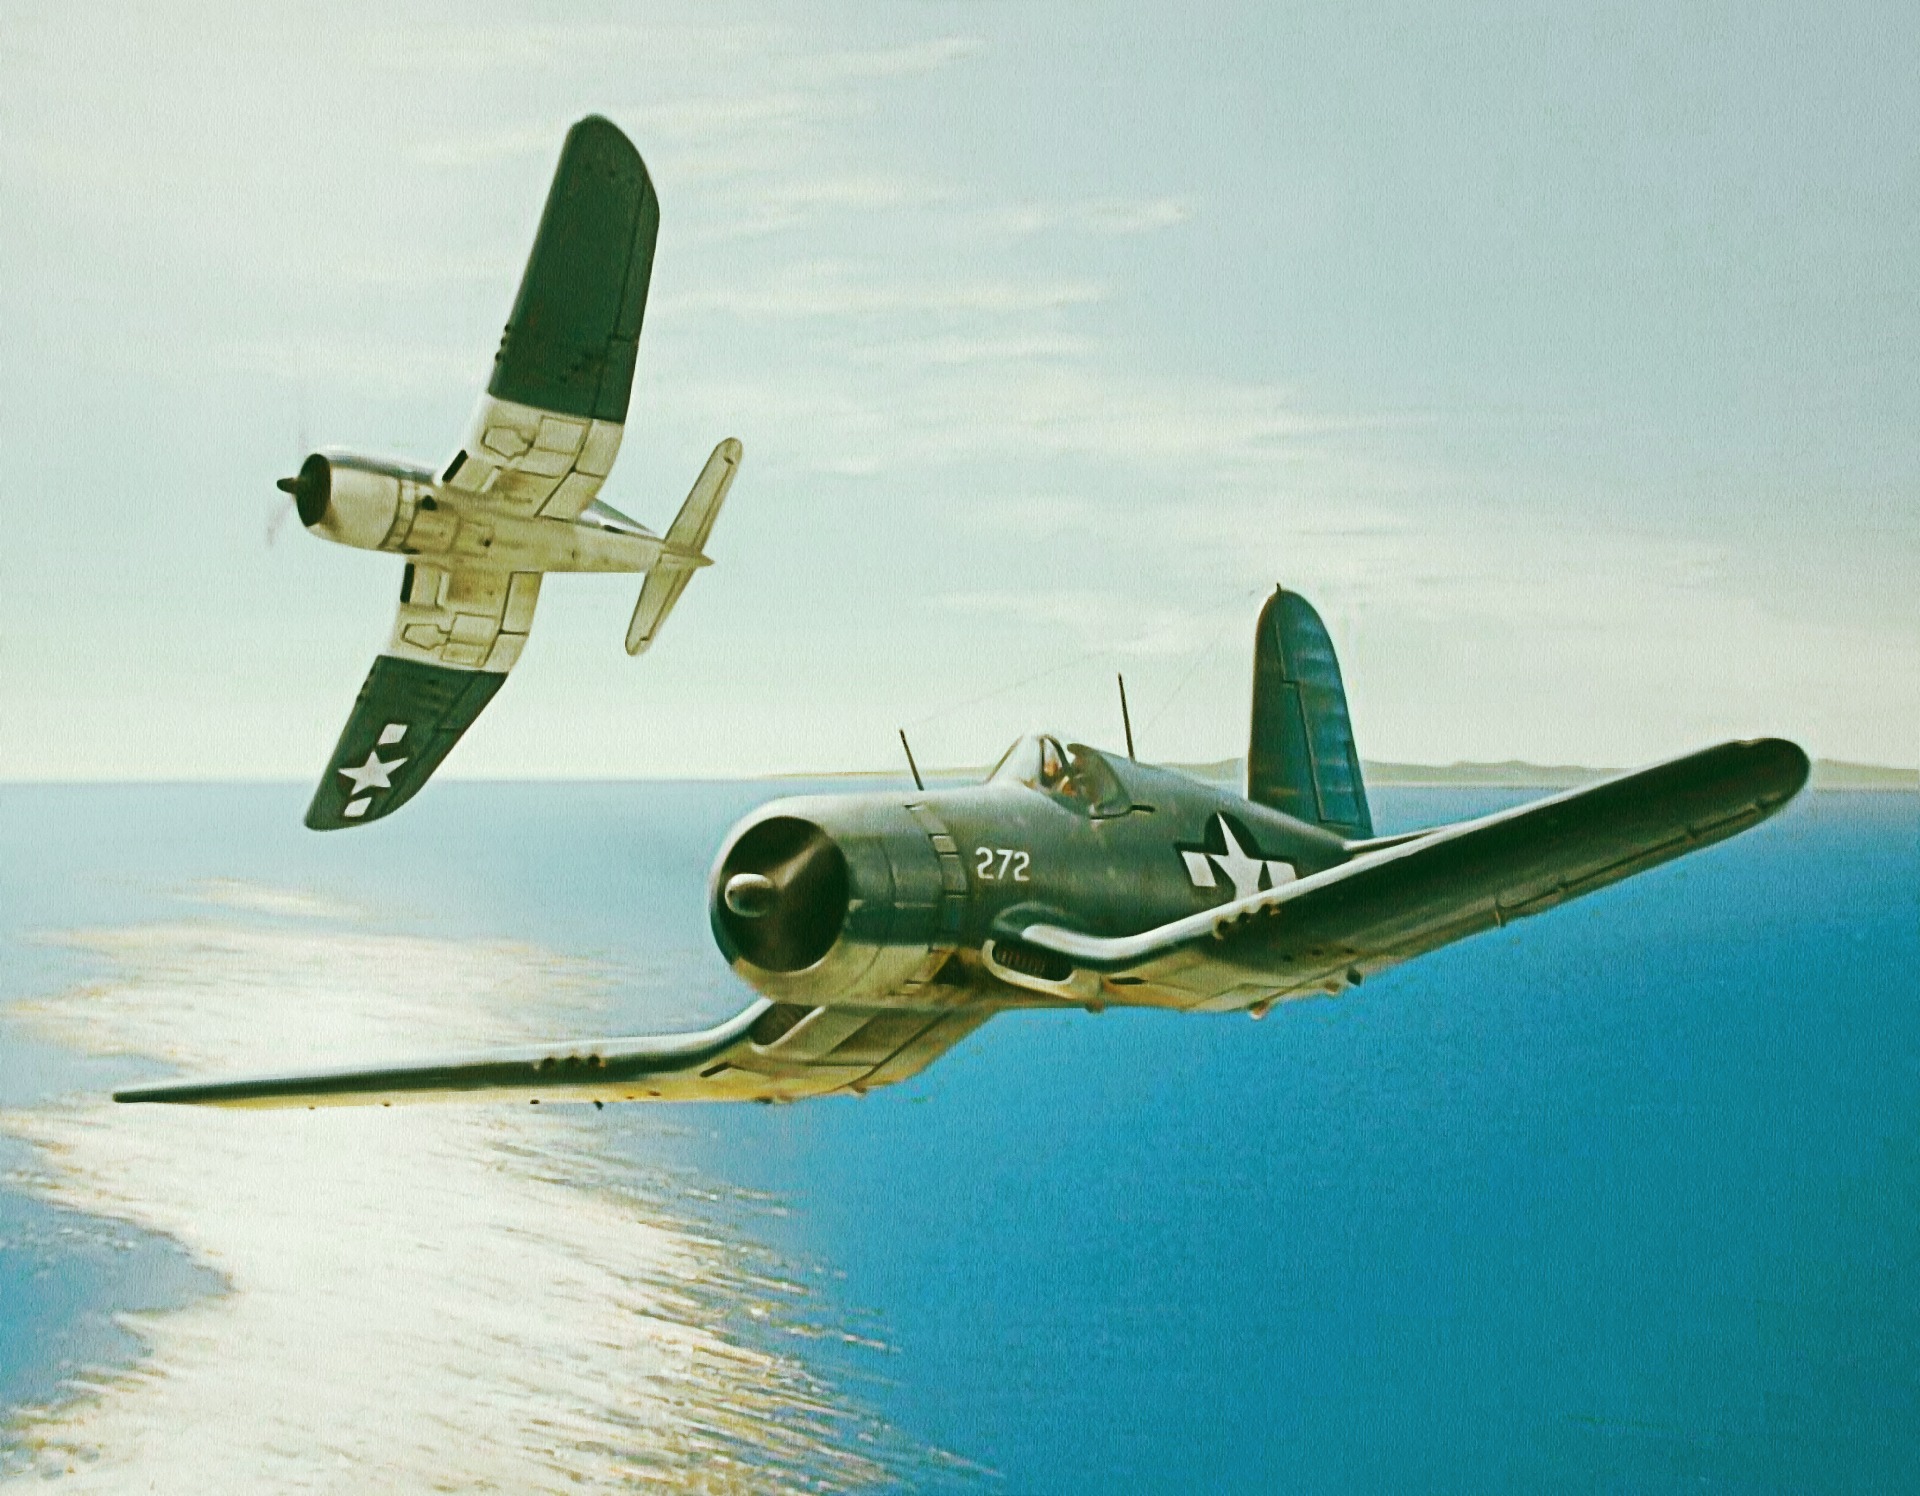 Wallpaper Vought F4u Corsair Pacific Warriors Ww2 War Aviation